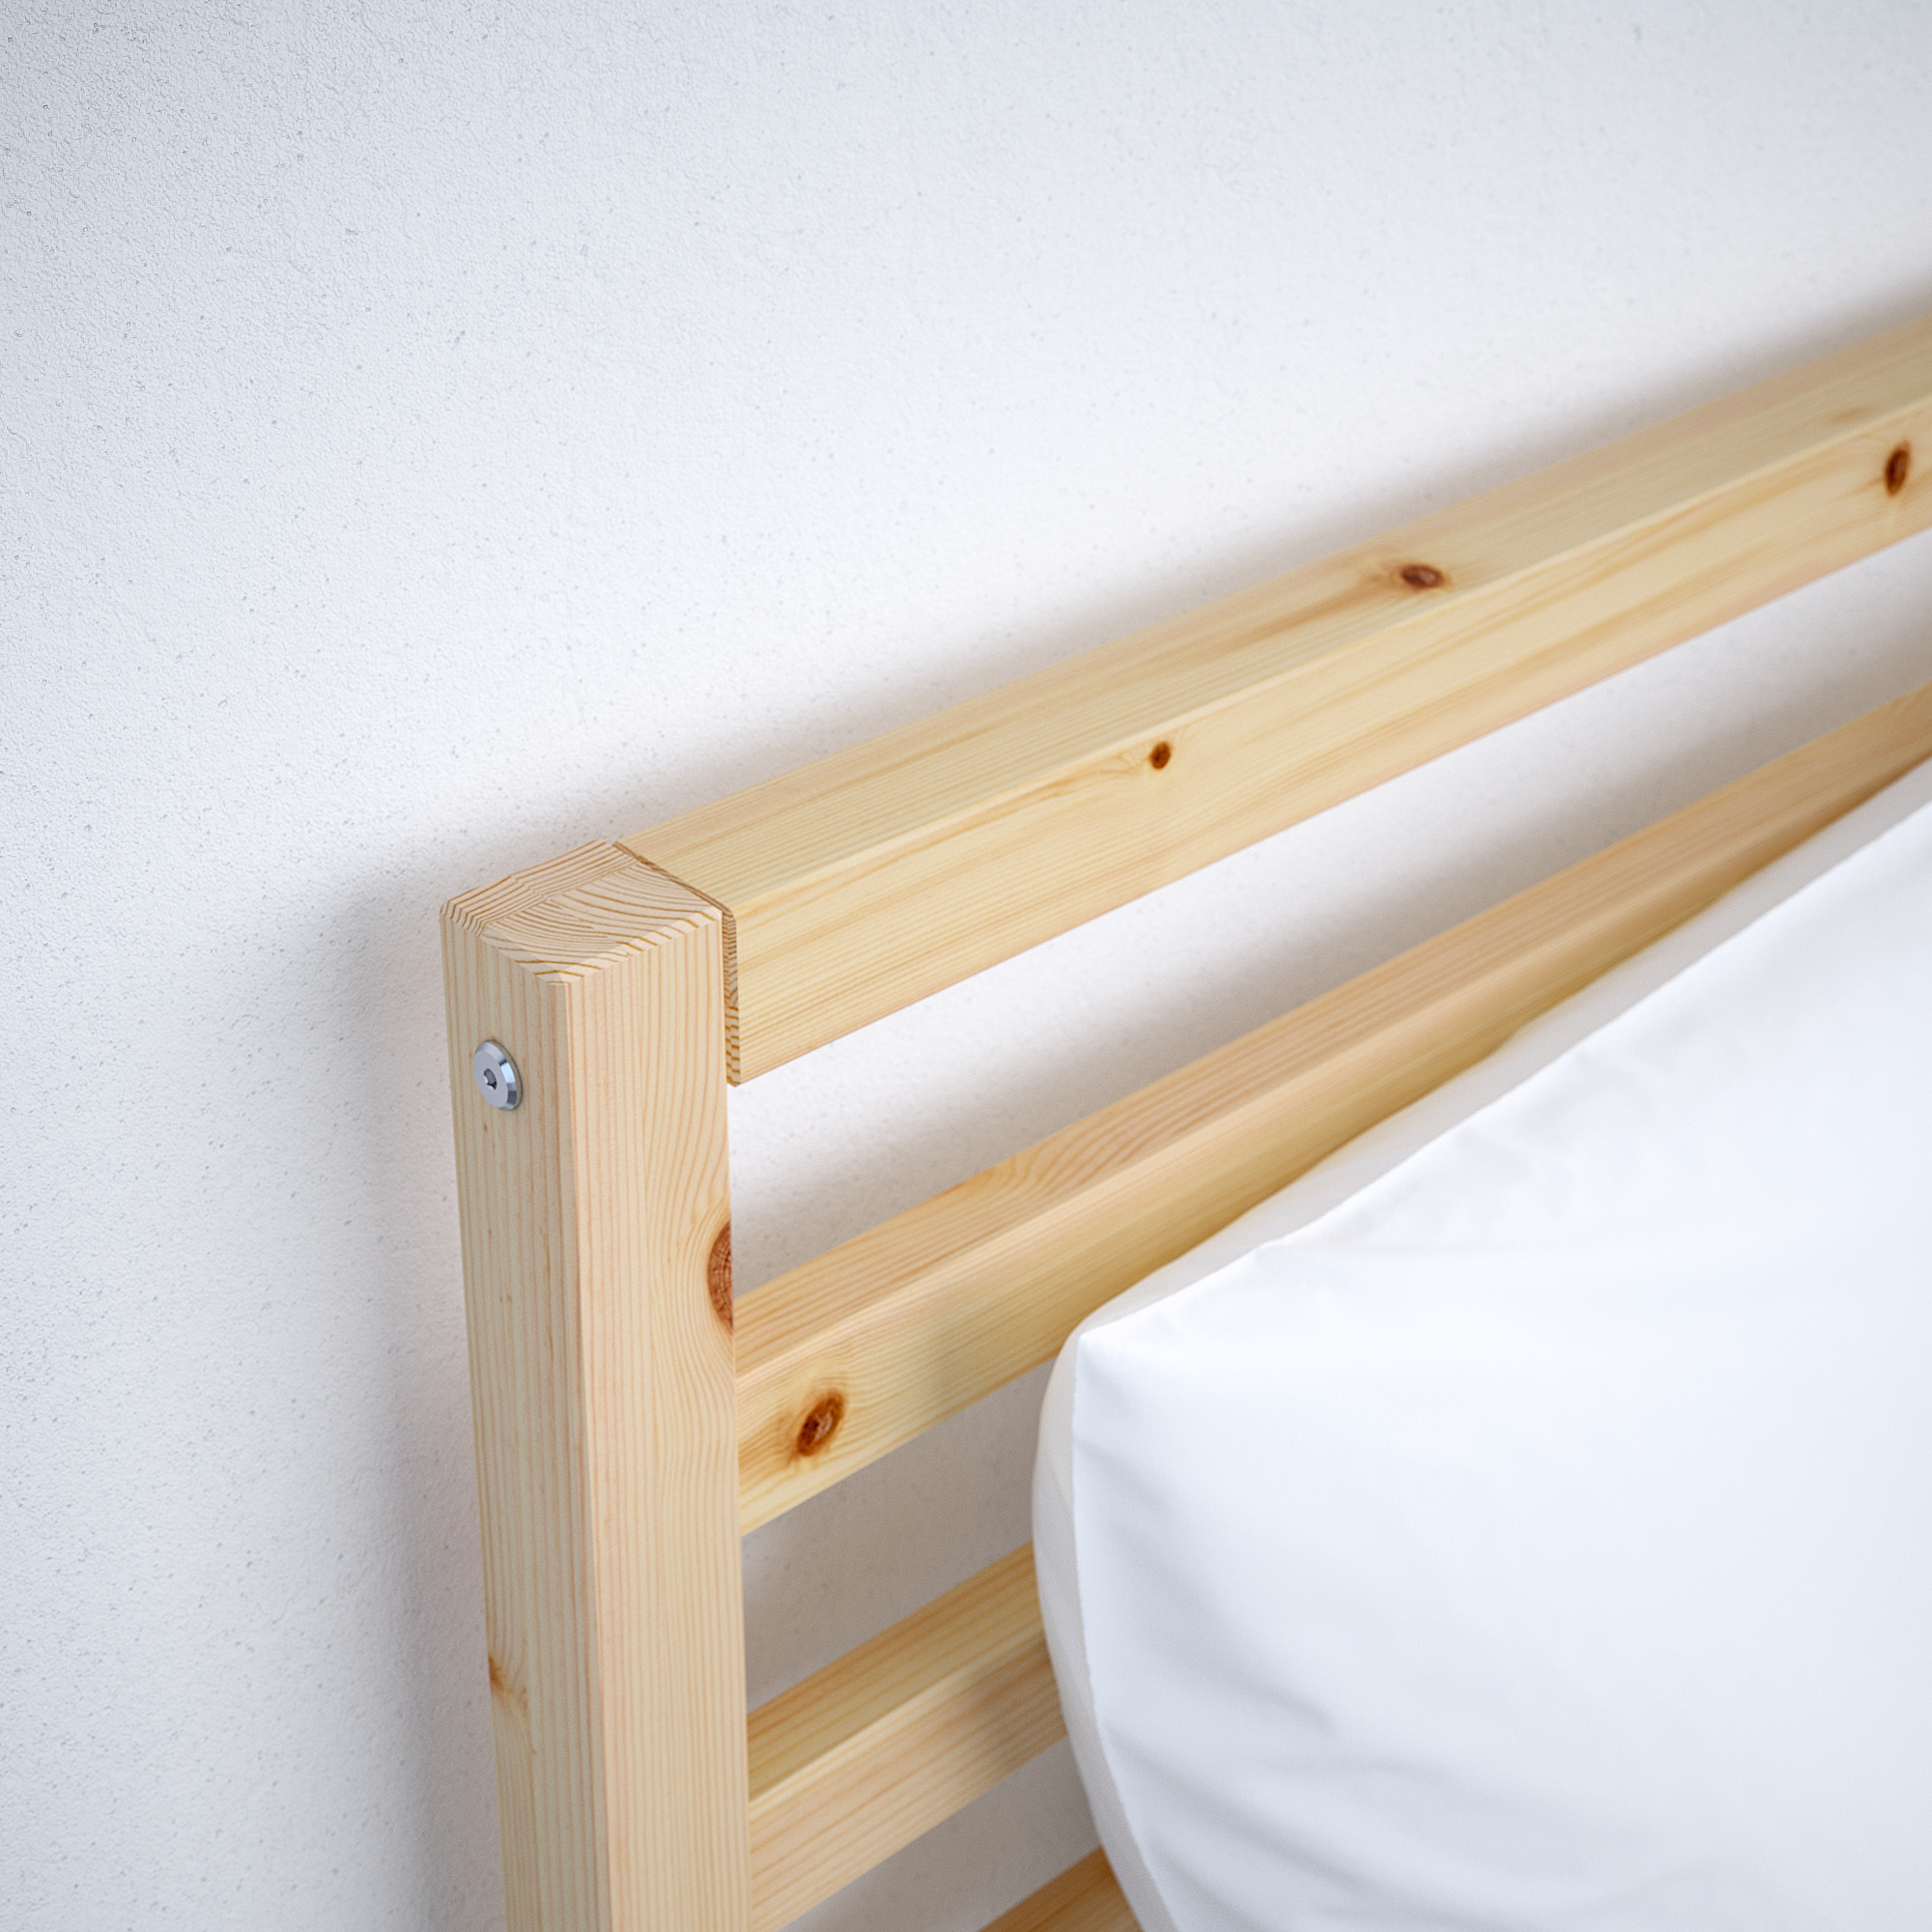 TARVA bed frame